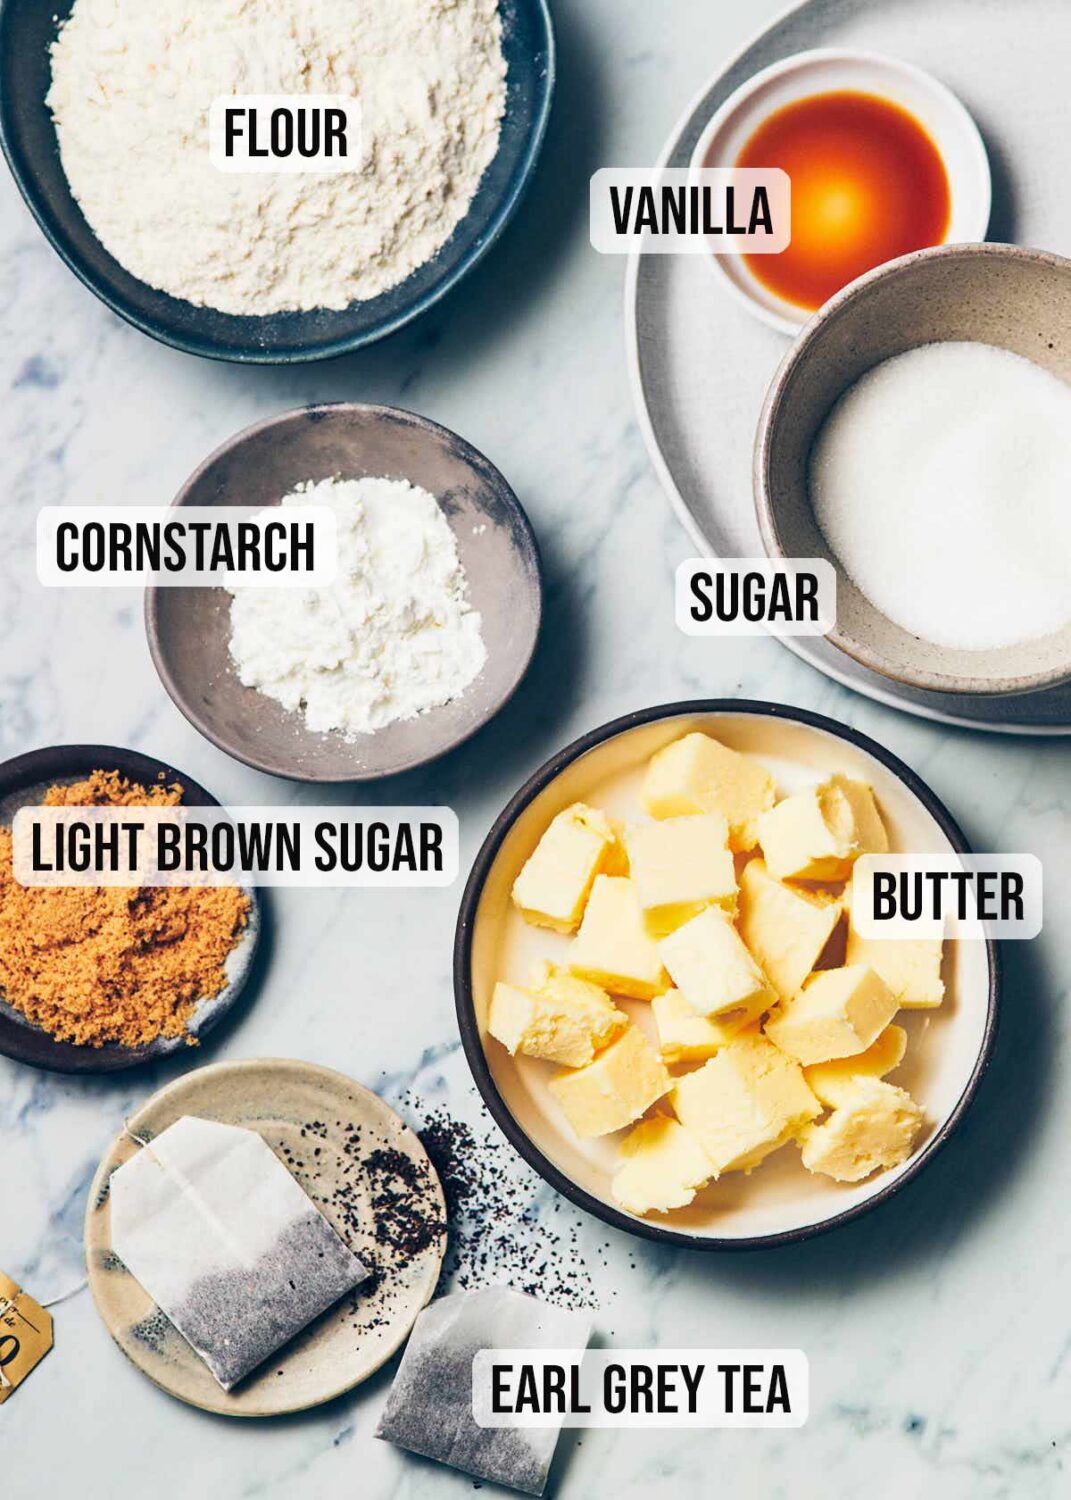 Ingredients to make earl grey shortbread (flour, vanilla, sugar, butter, earl grey tea, cornstarch)